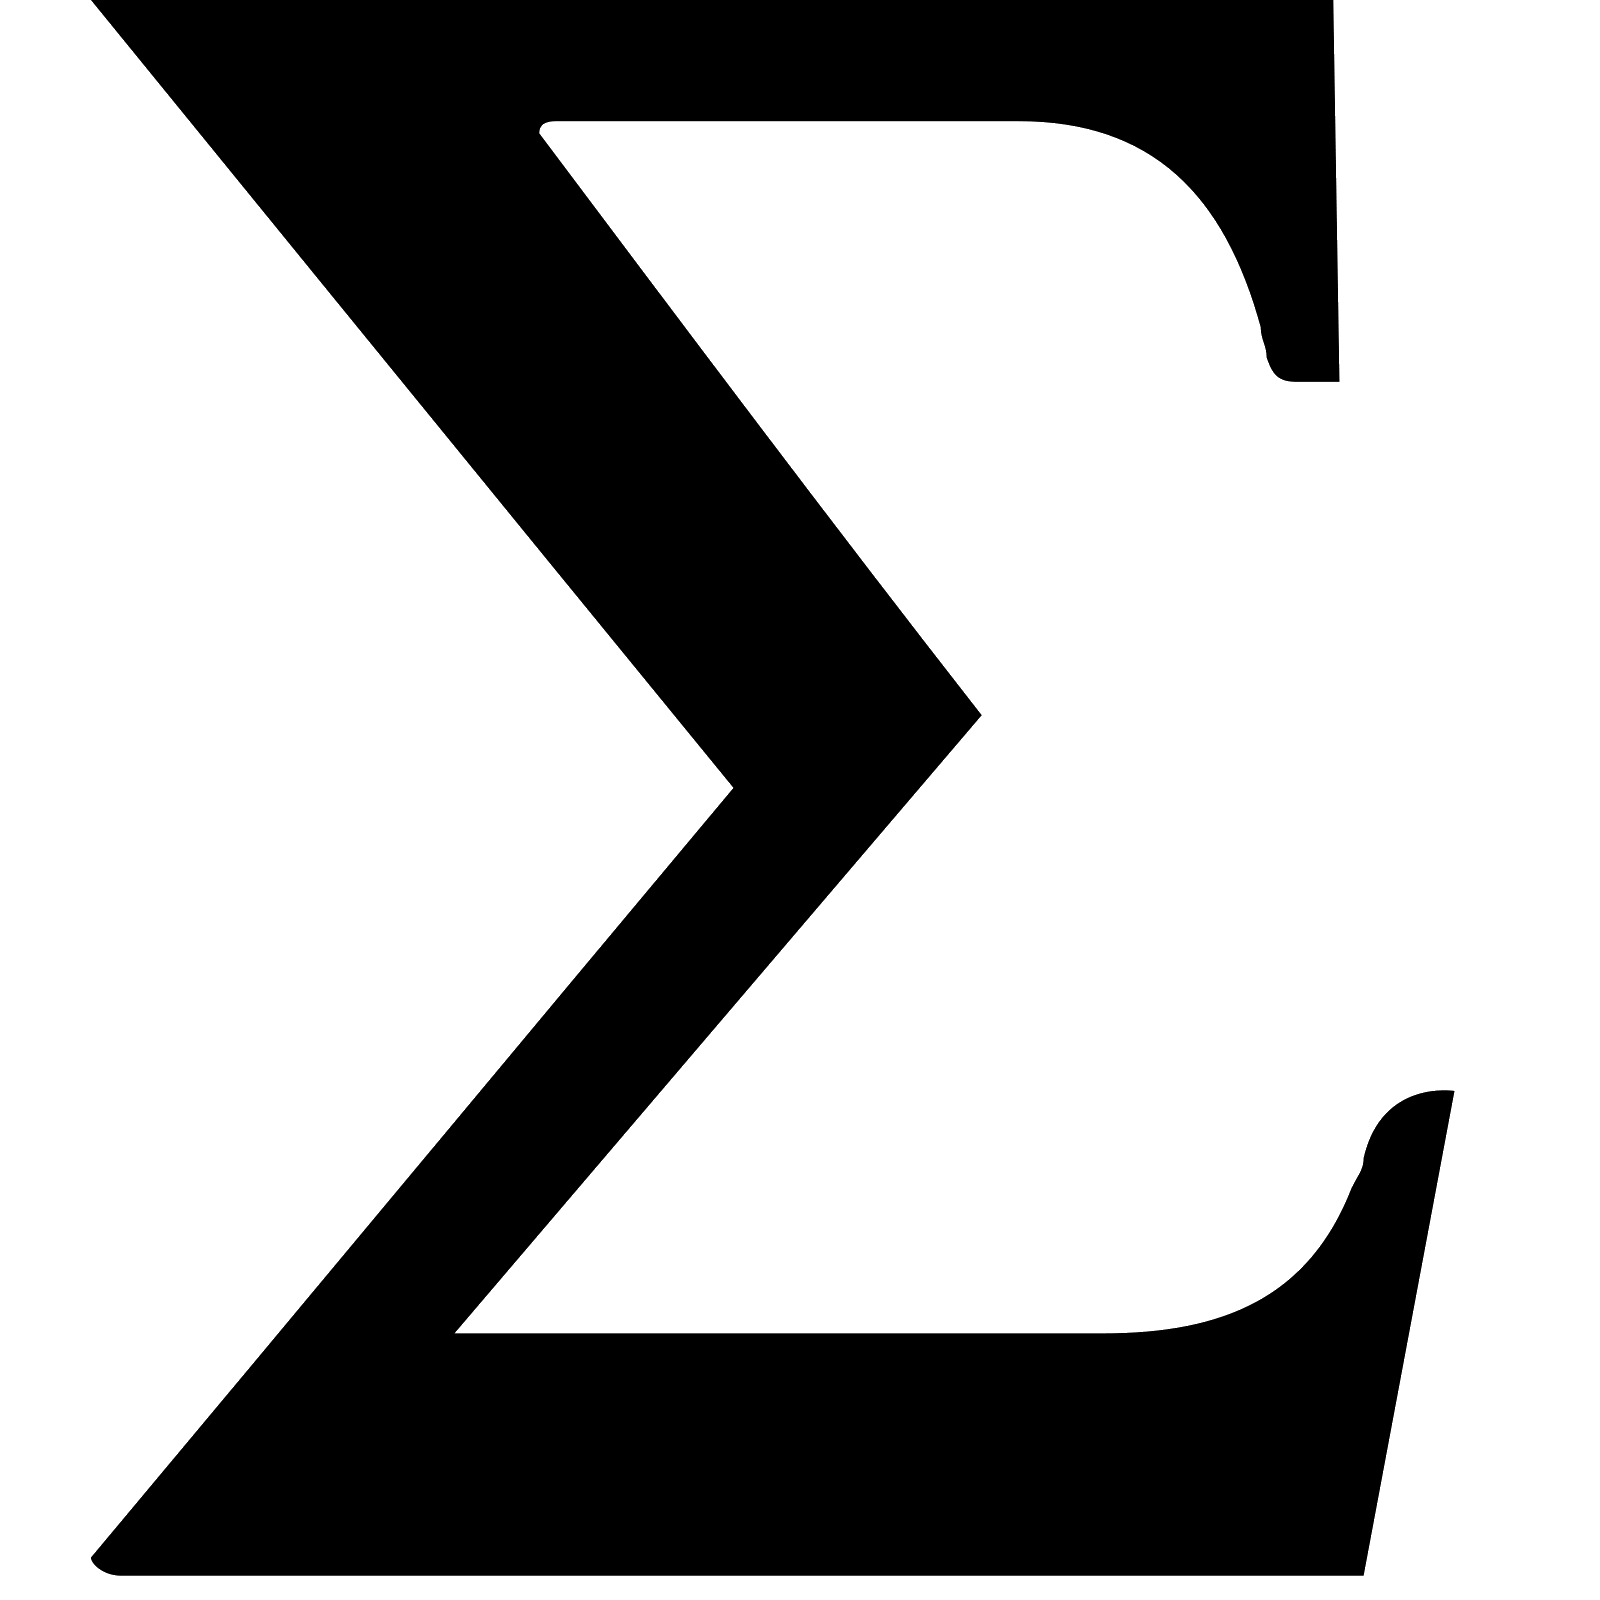 Sigma logo. Сигма обозначение символ. Знак суммы. Значок суммы. Математическая сигма